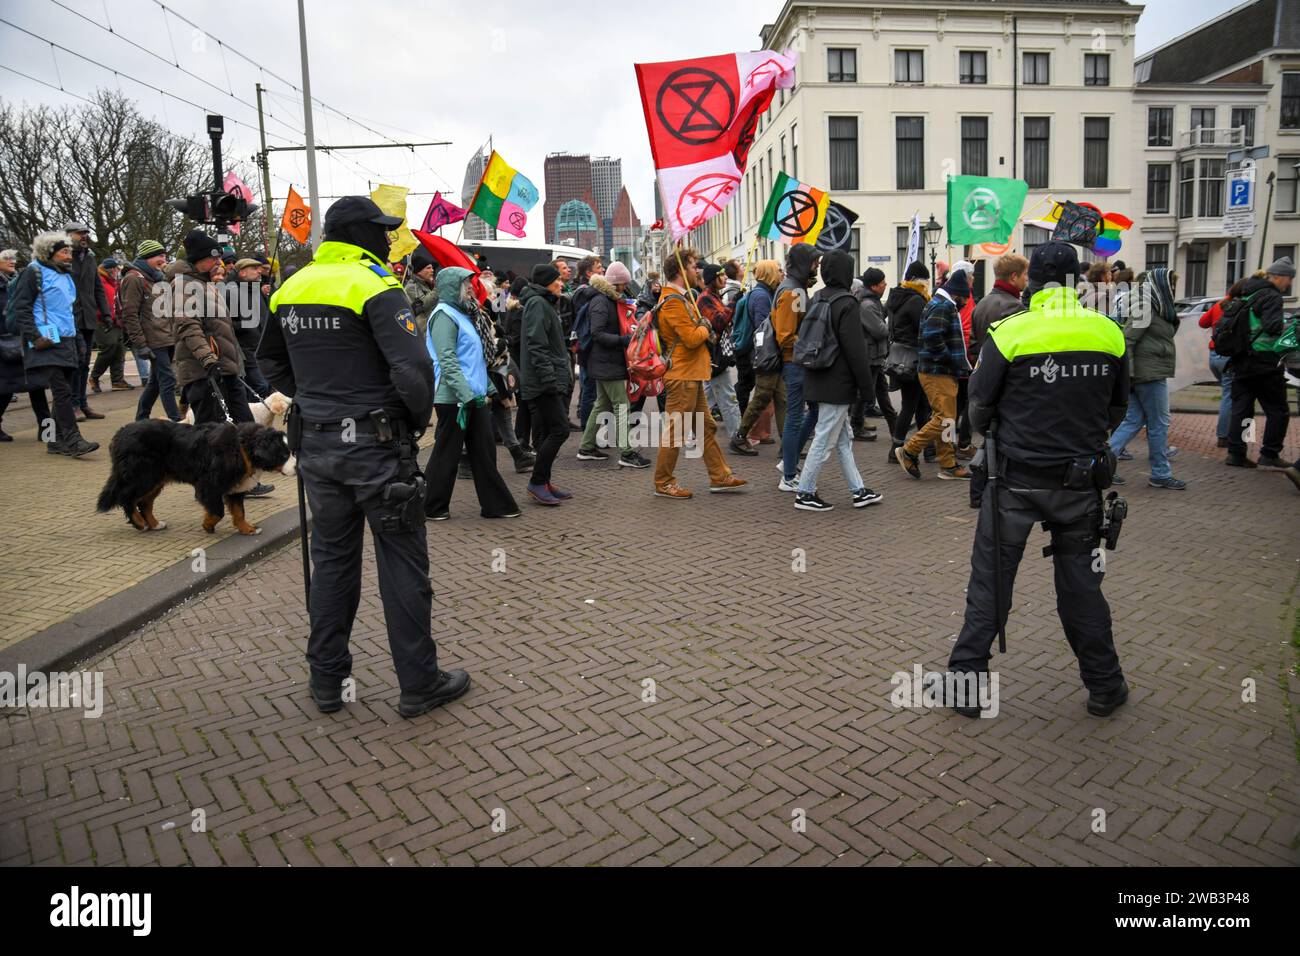 Den Haag, die Niederlande, 8. januar 2024. Die Extinktionsrebellion marschierte zum senat des niederländischen parlaments, um gegen Subventionen für fossile Brennstoffe zu protestieren. Quelle: Pmvfoto/Alamy Live News Stockfoto